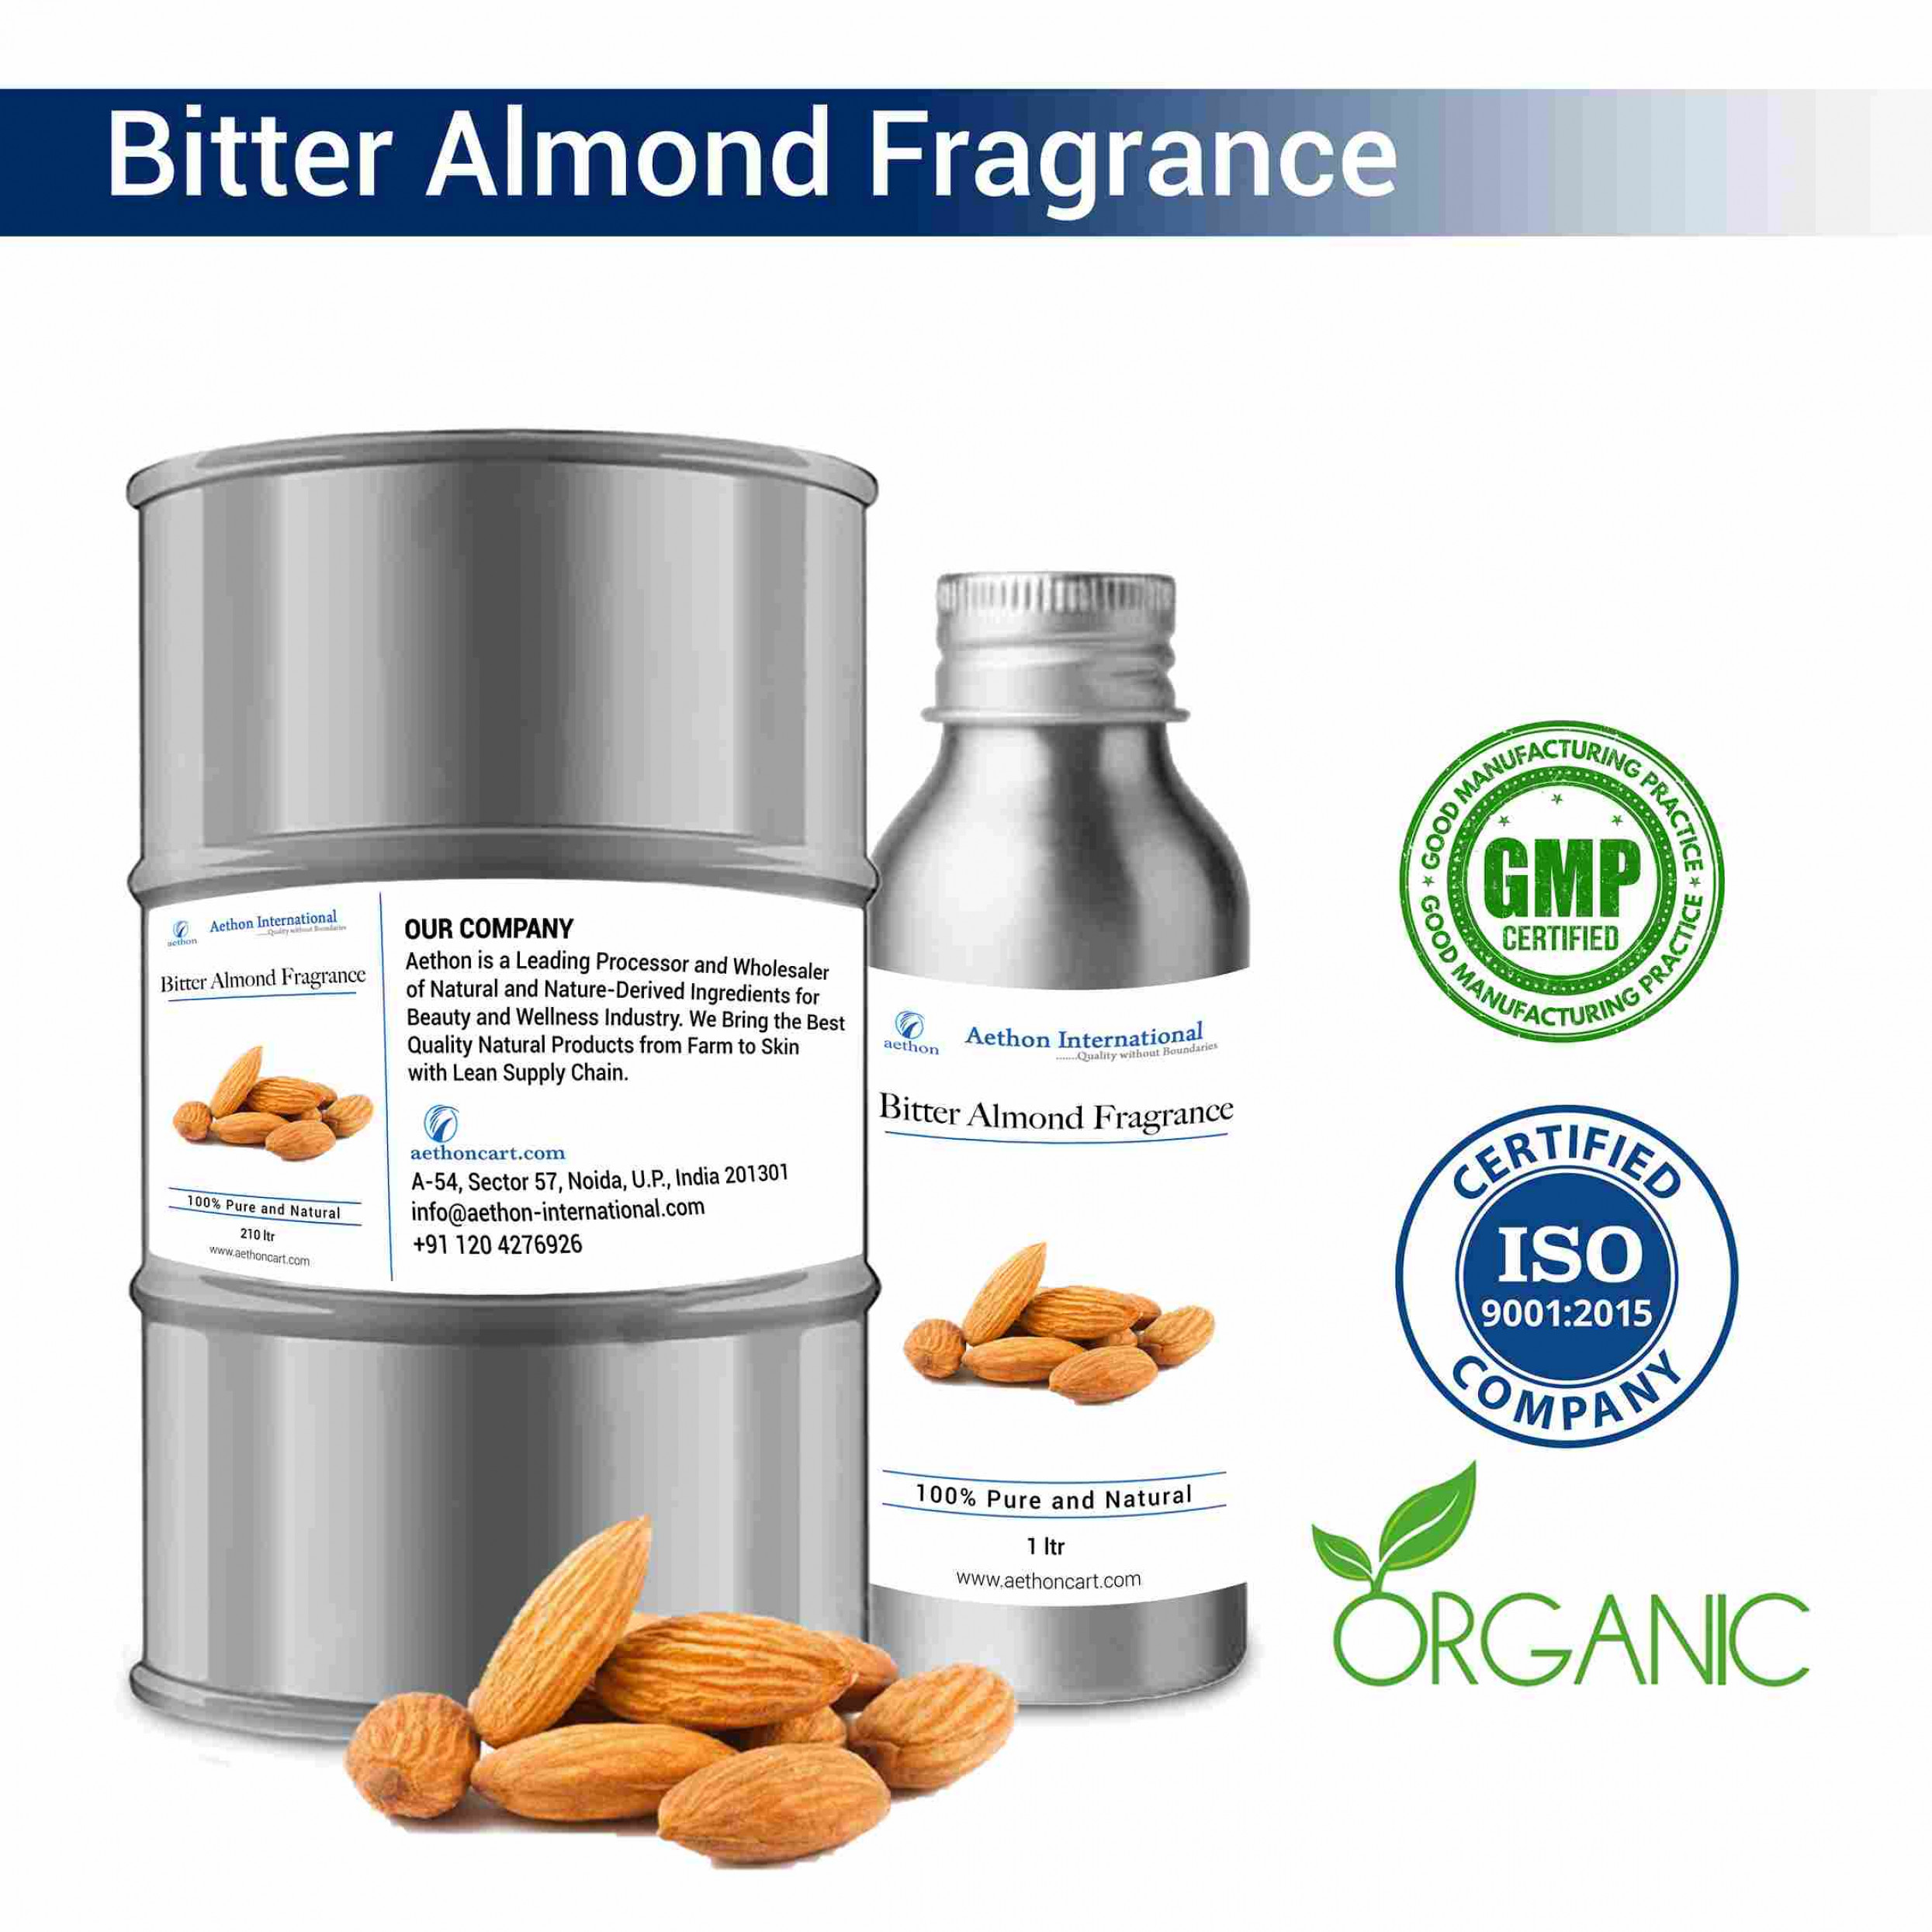 Bitter Almond Fragrance